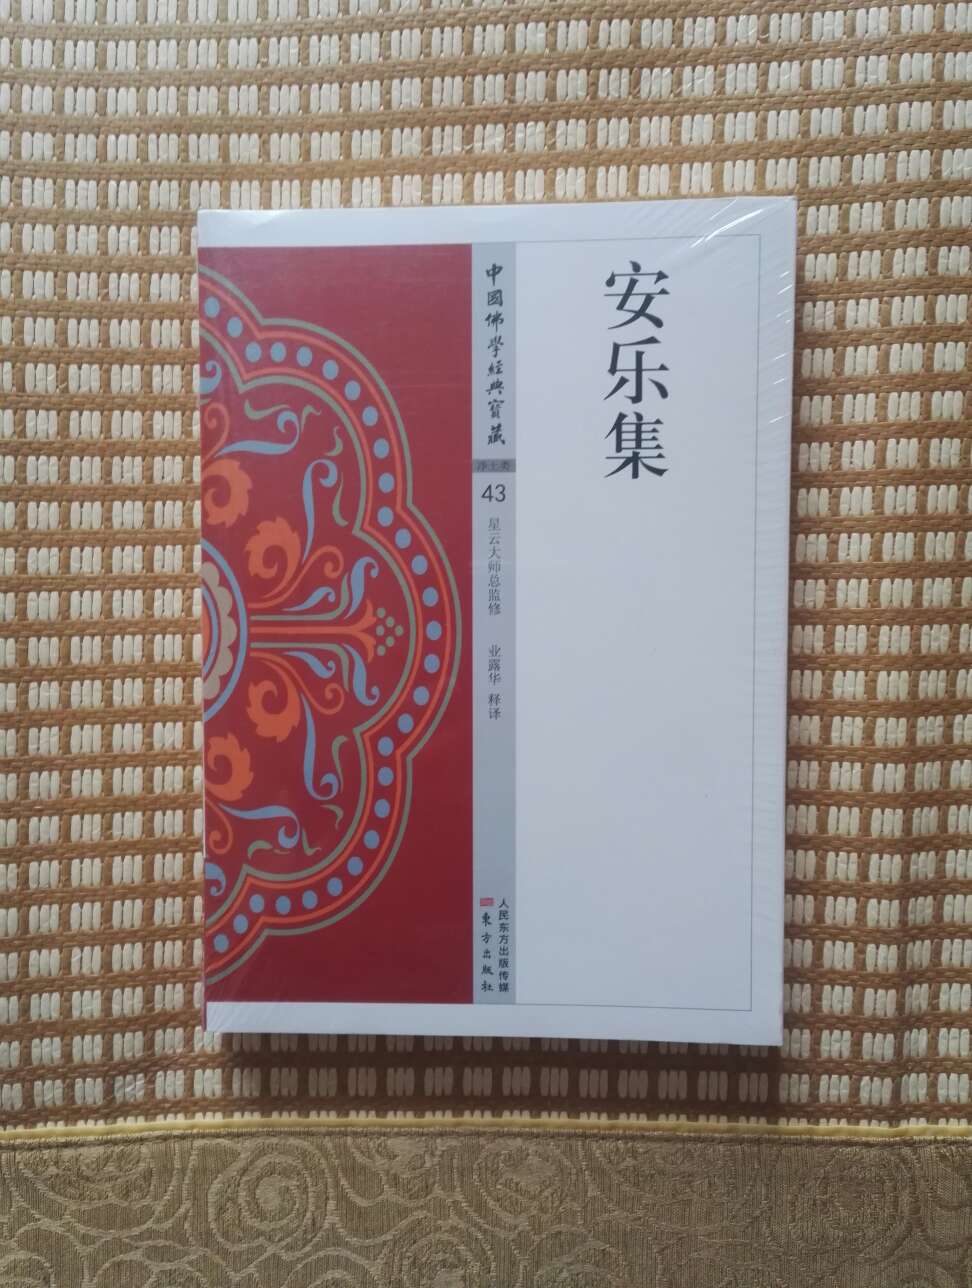 安乐集，星云大师总监修，中国佛学经典宝藏第43本，还有131本，慢慢看。